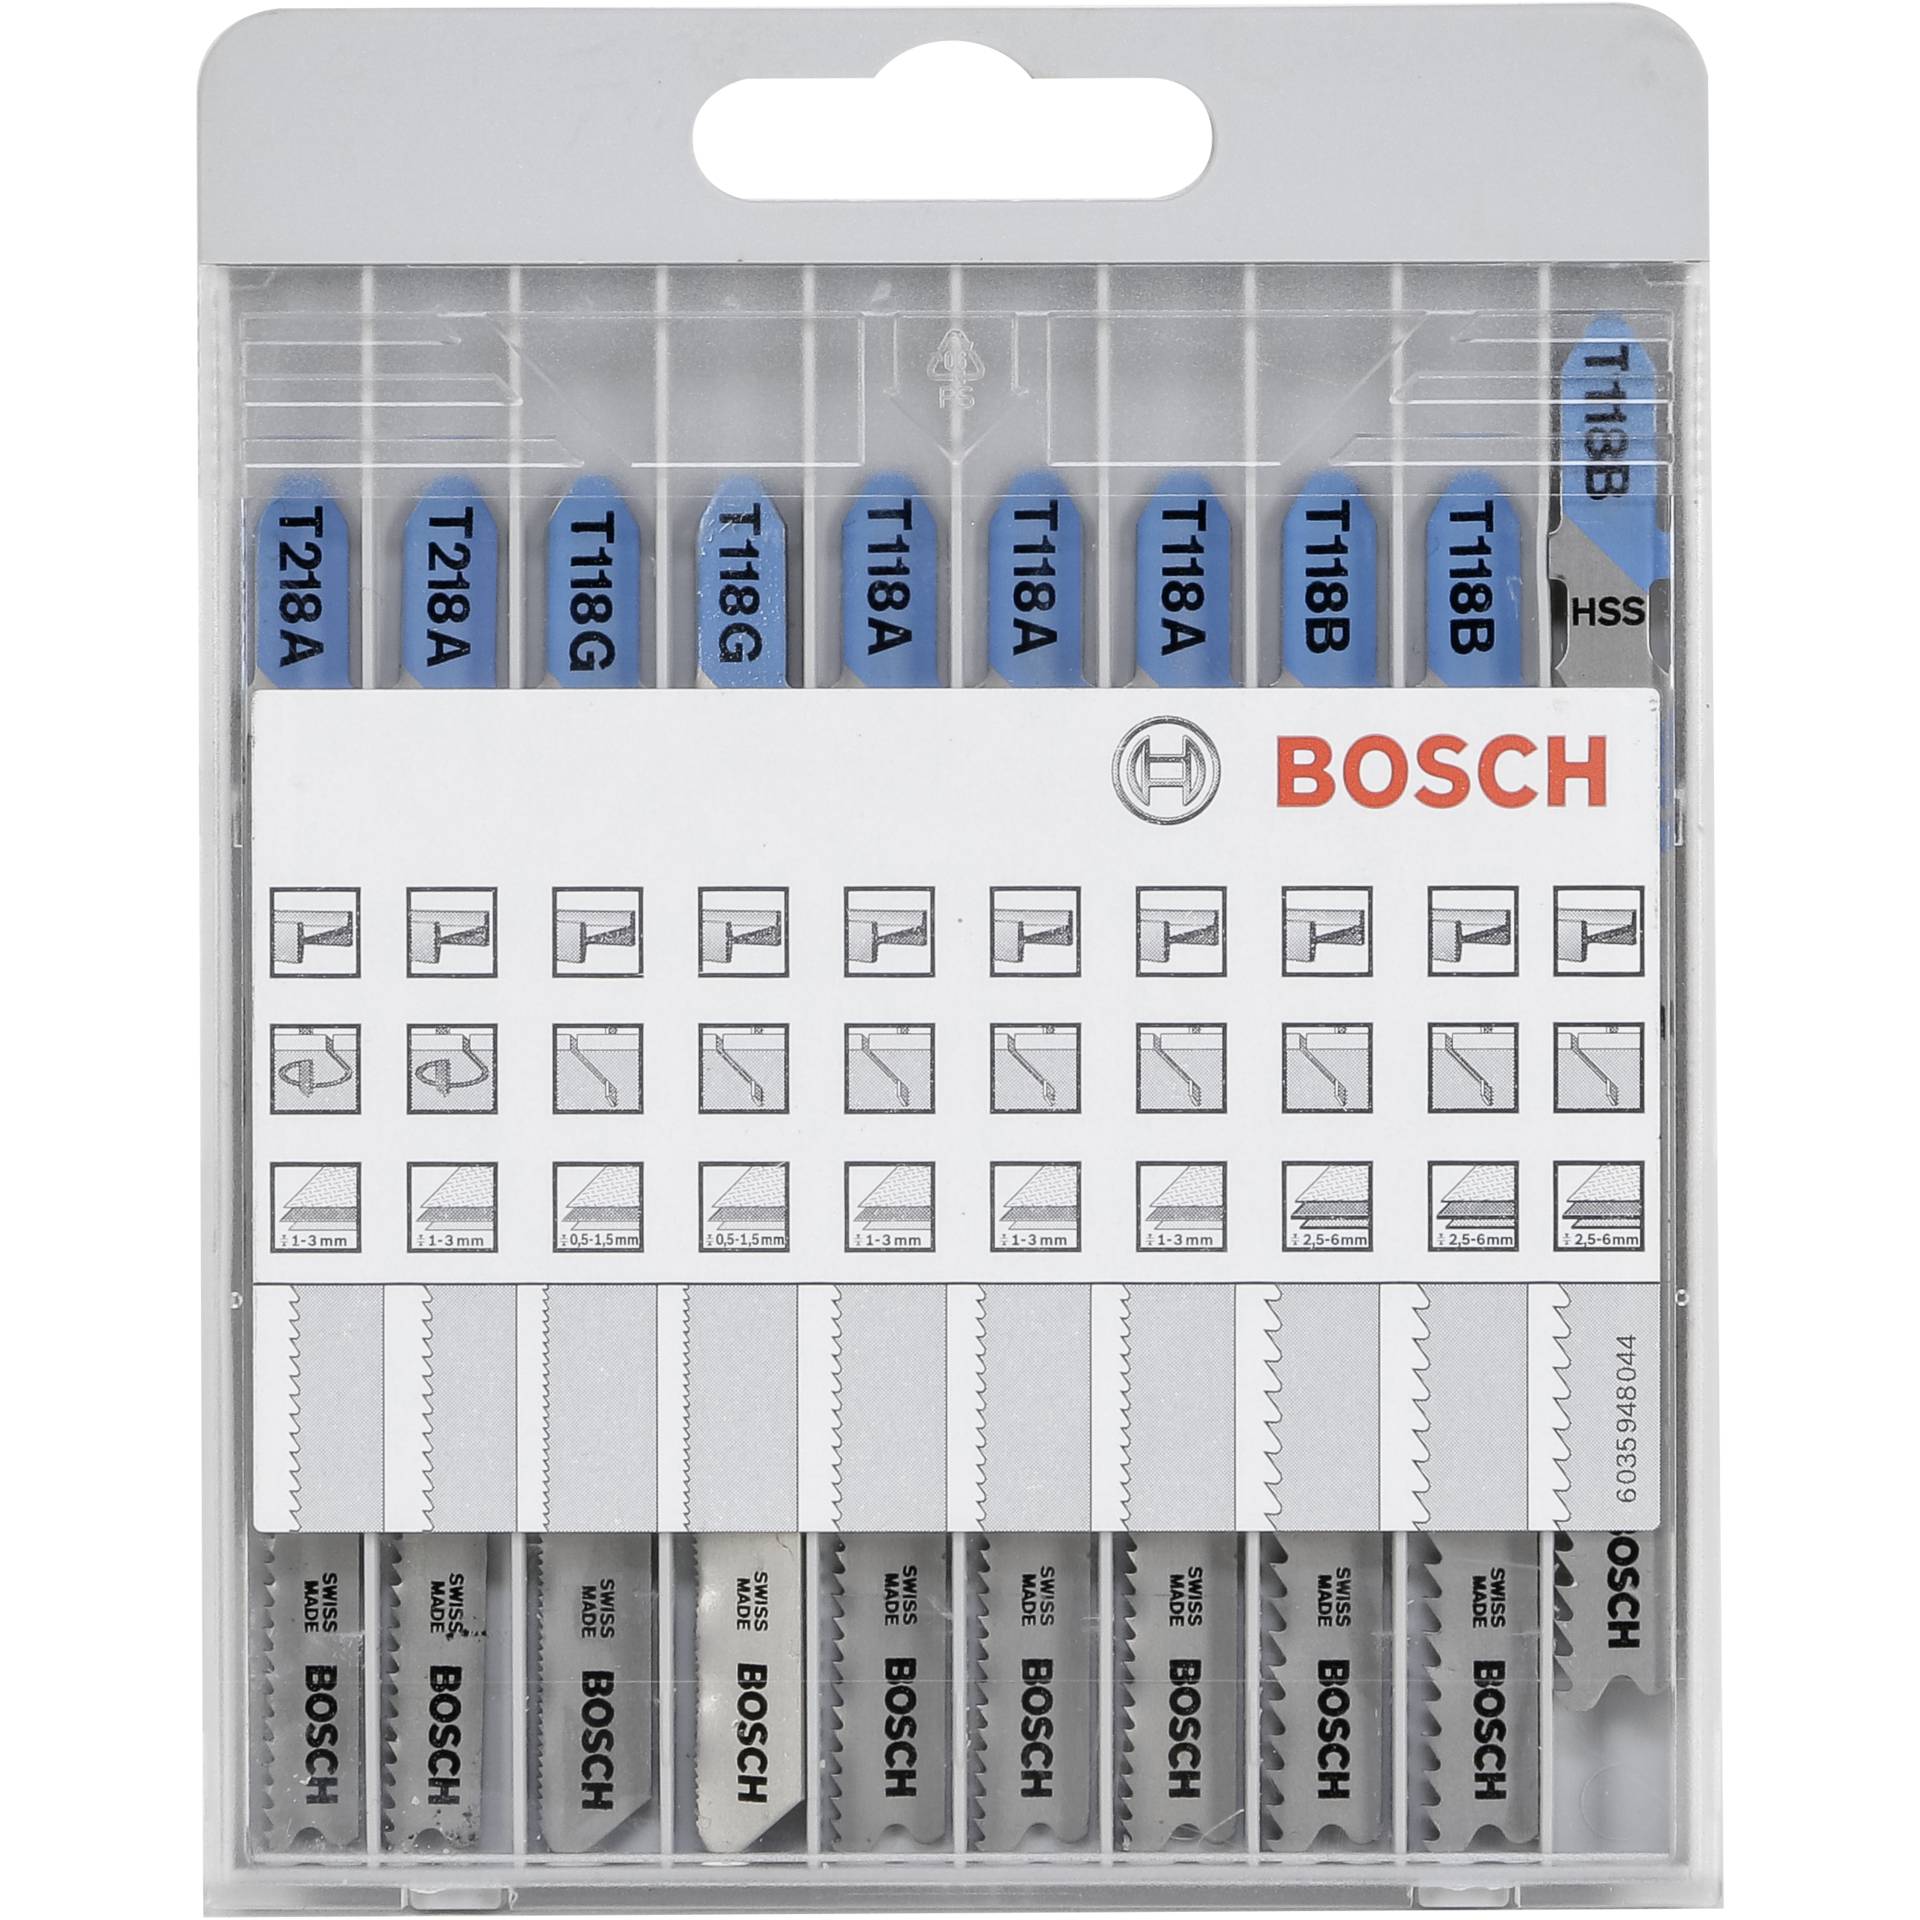 Bosch 2 607 010 631 Sägeblatt für Stichsägen, Laubsägen & elektrische Sägen